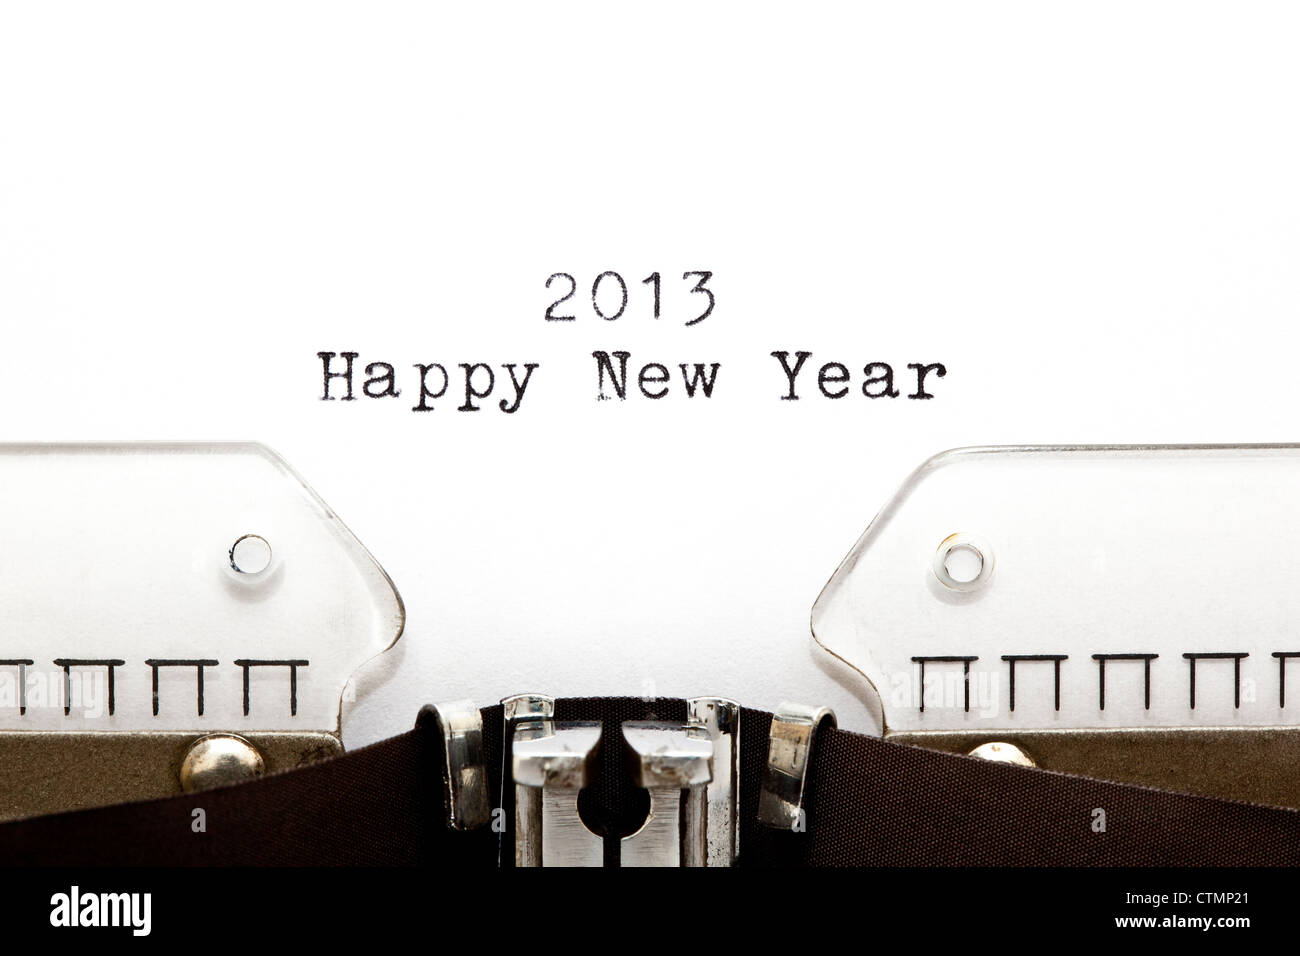 Konzept-Bild mit 2013 Happy New Year auf einer alten Schreibmaschine geschrieben Stockfoto